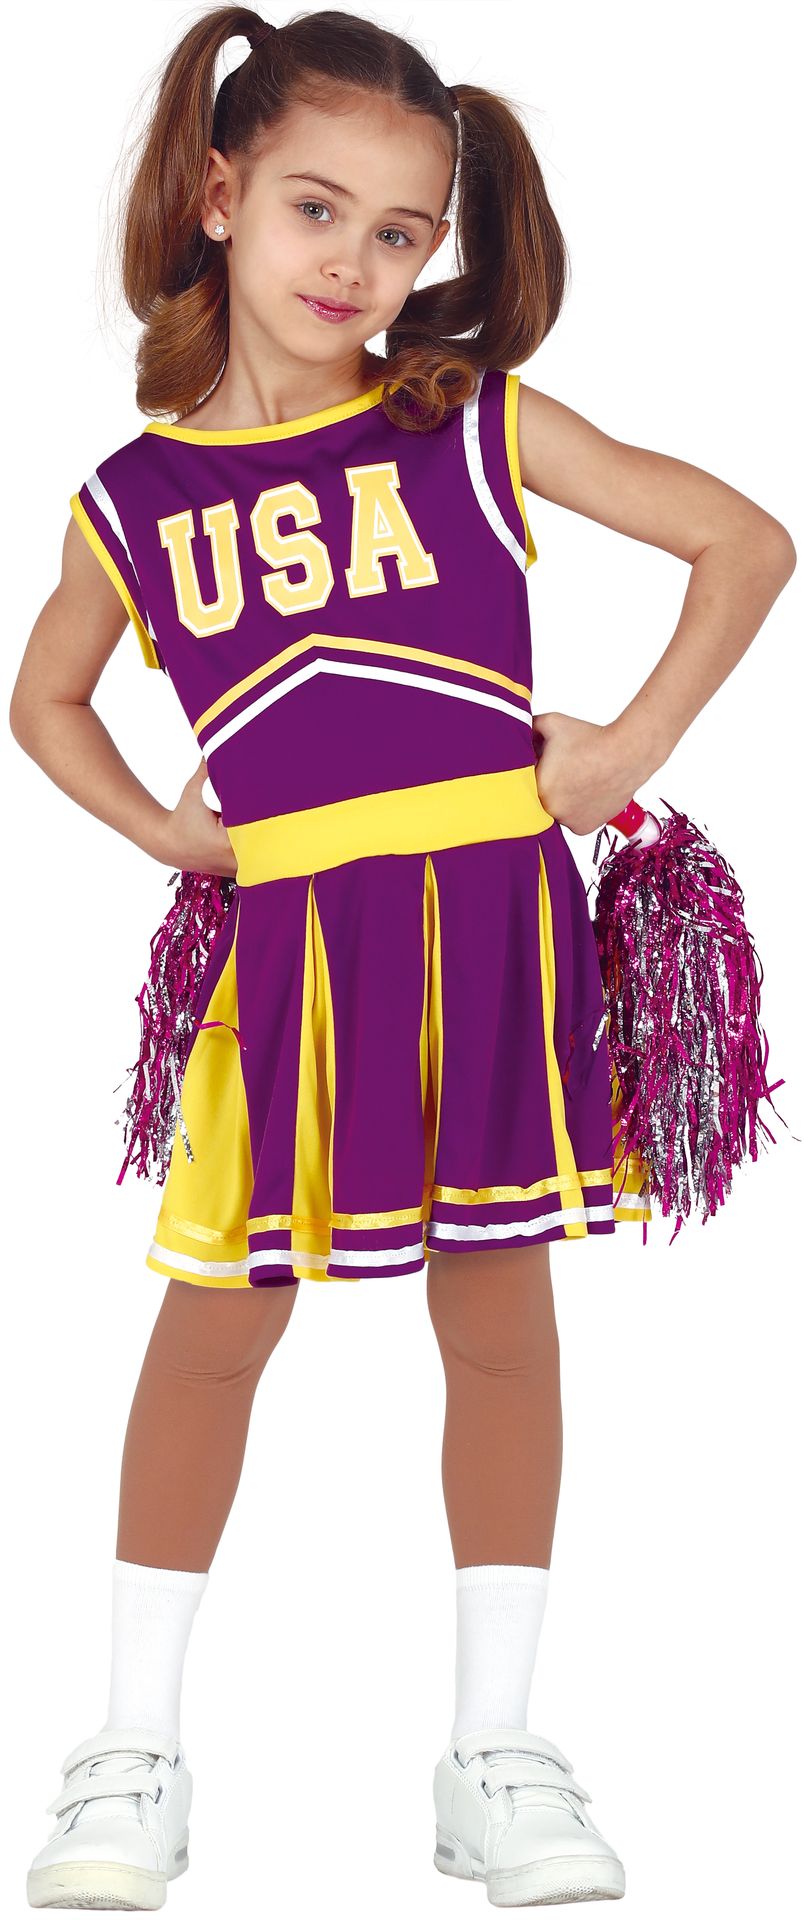 USA cheerleader meisjes